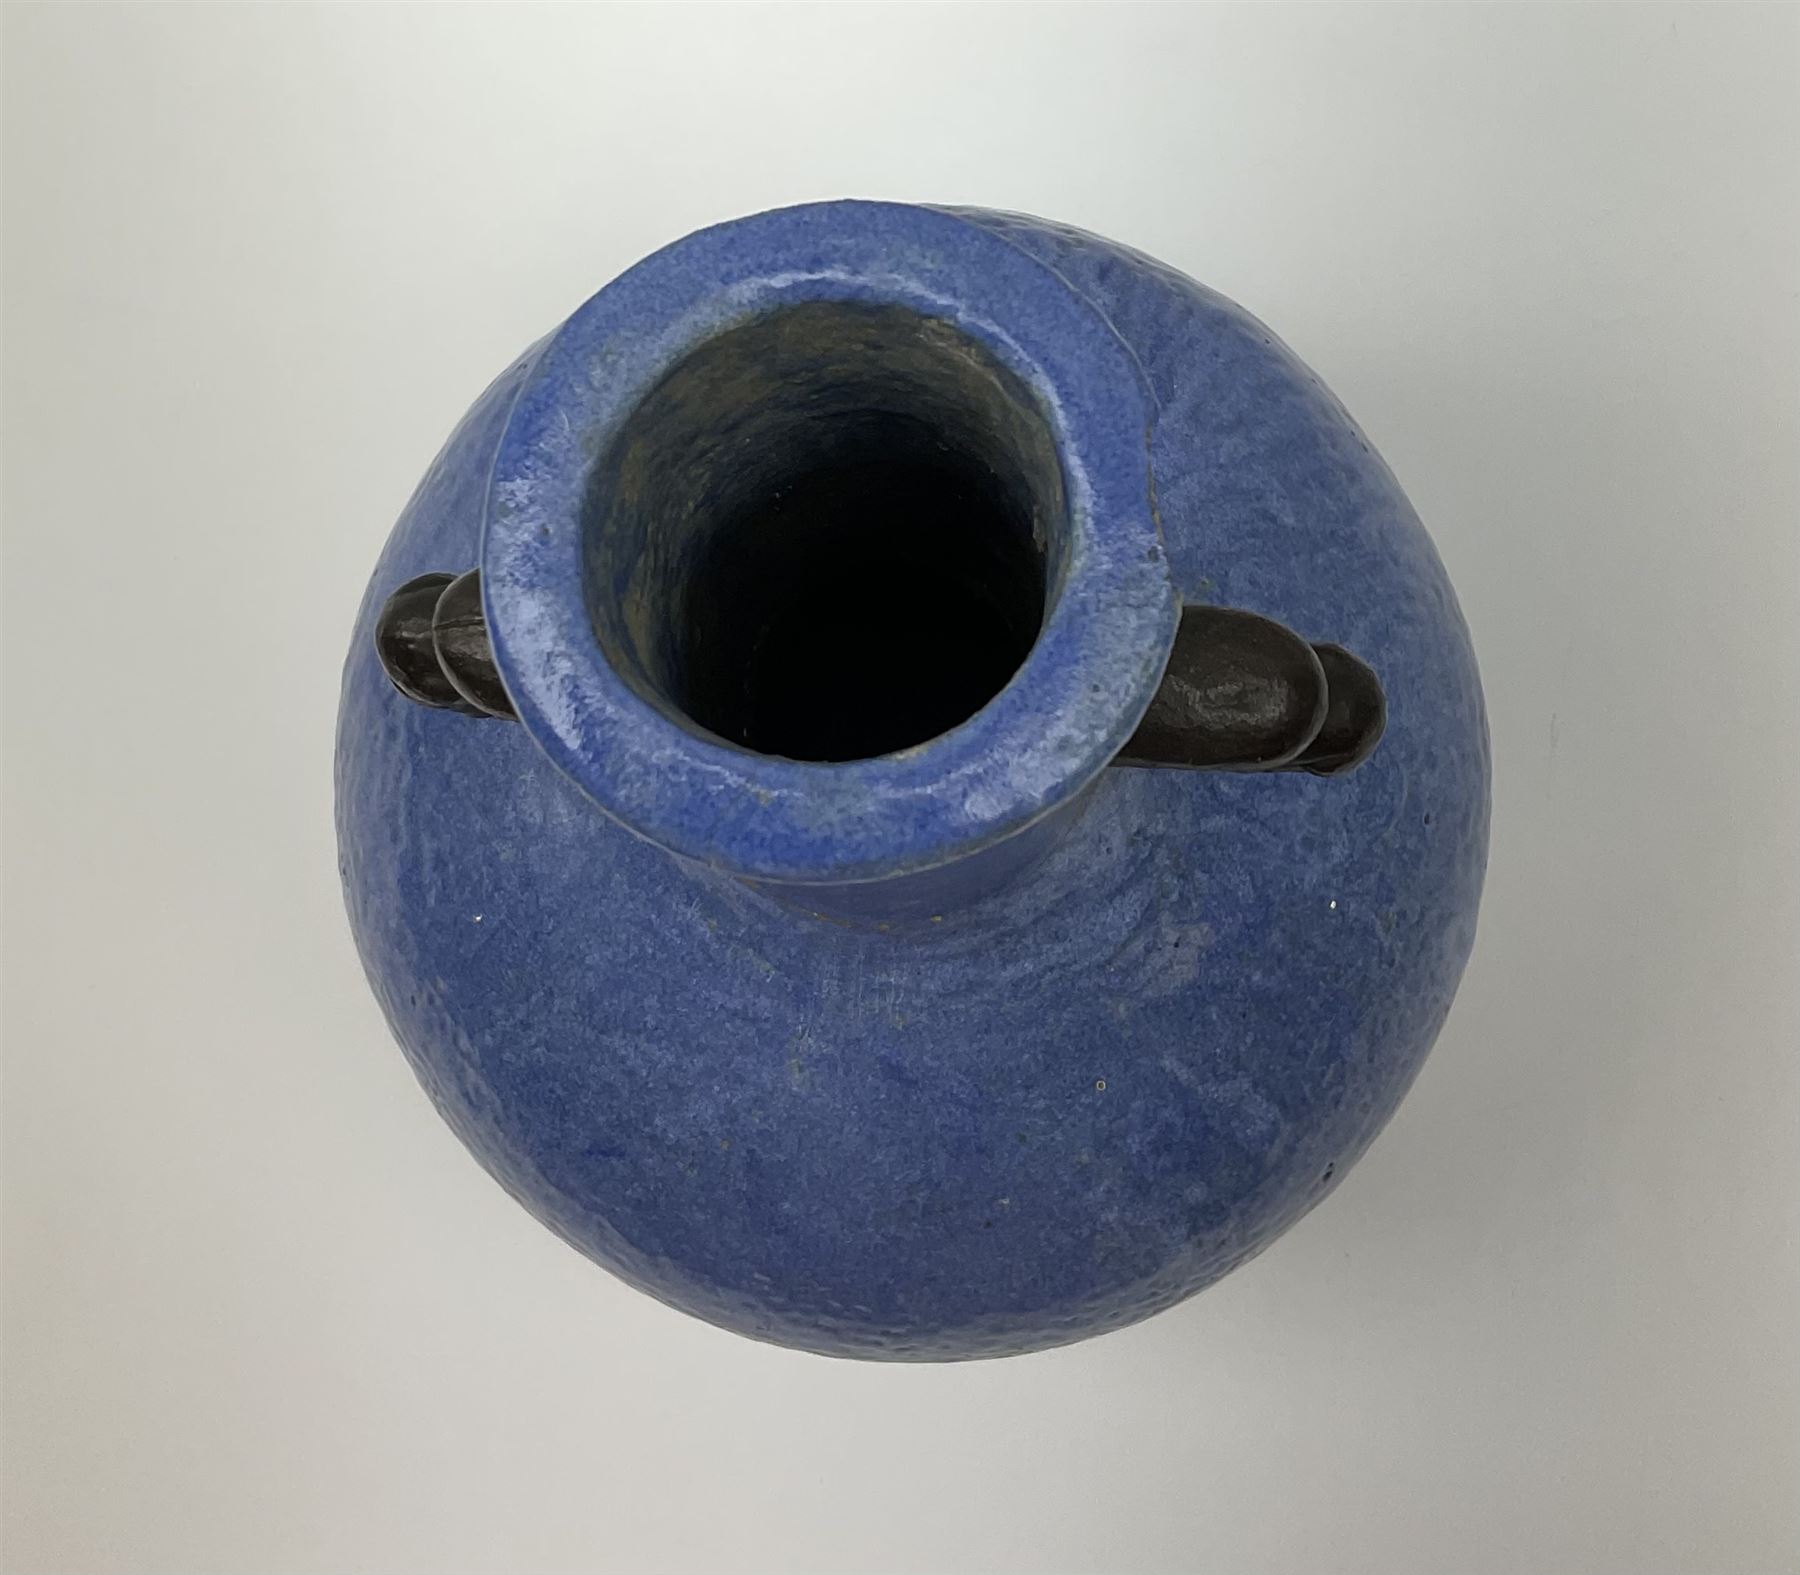 20th Century Chinese blue glazed twin handled vase with orange peel finish - Image 4 of 8